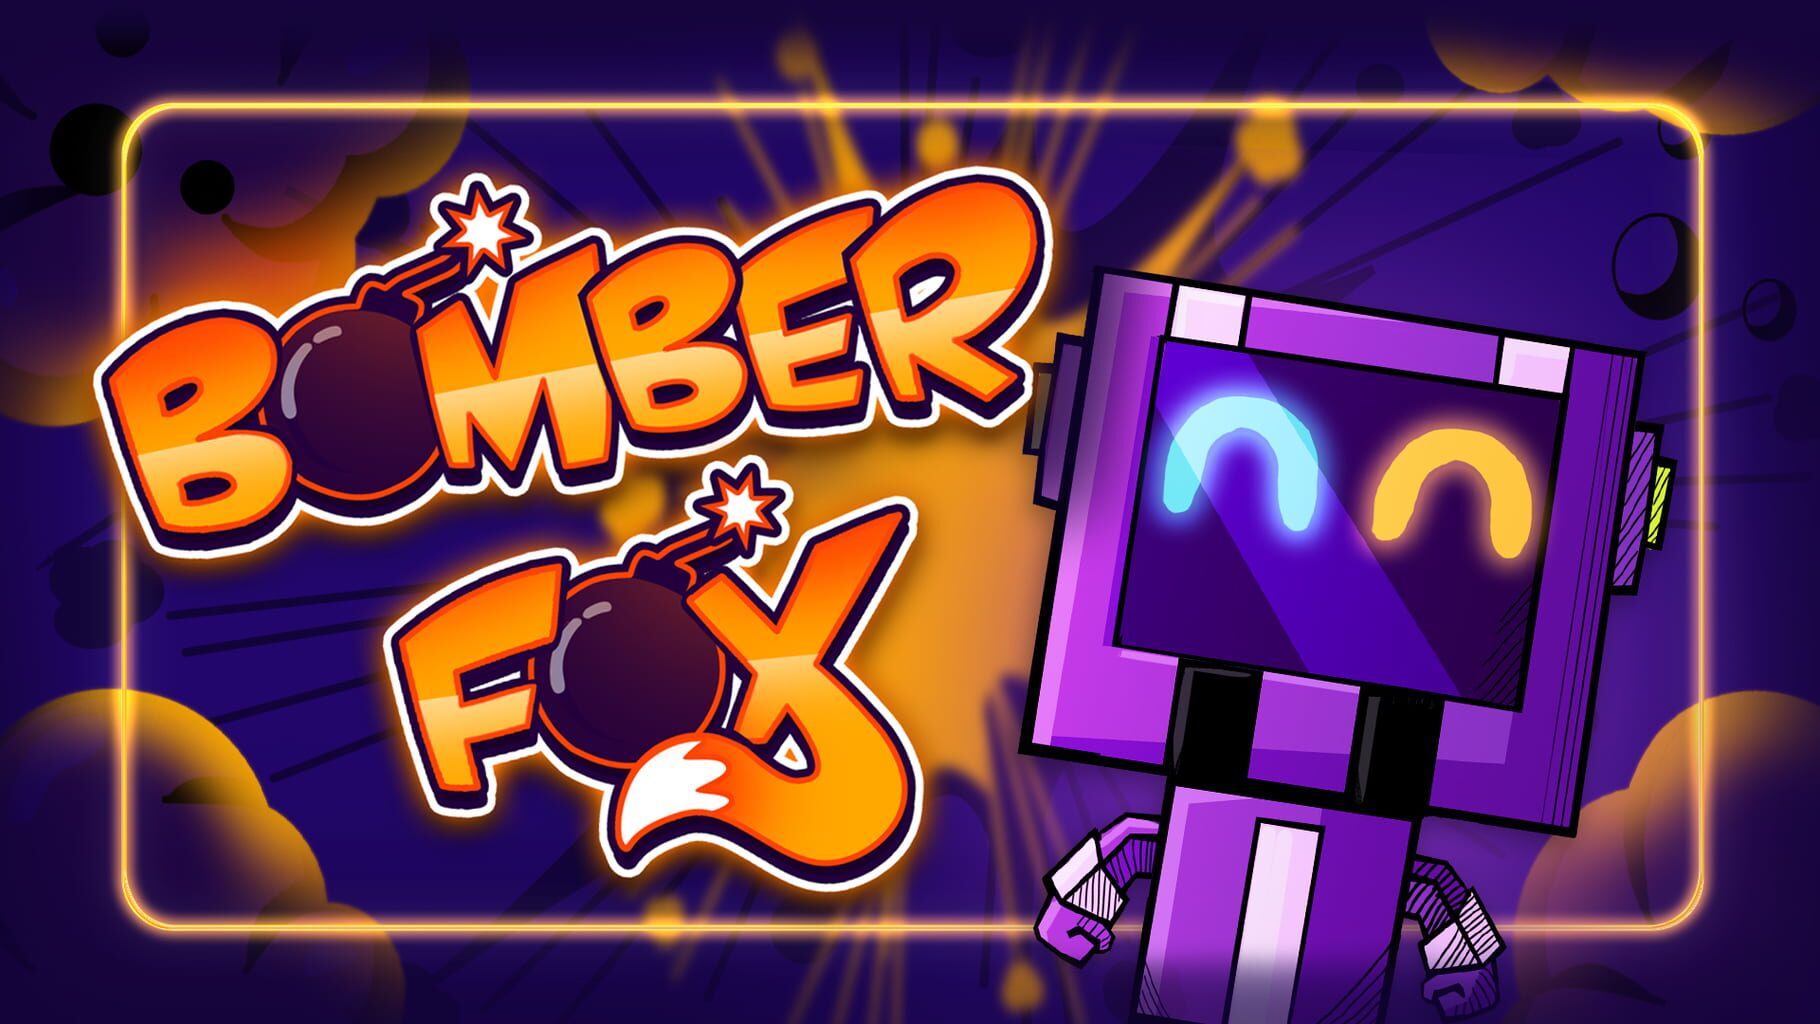 Bomber Fox artwork